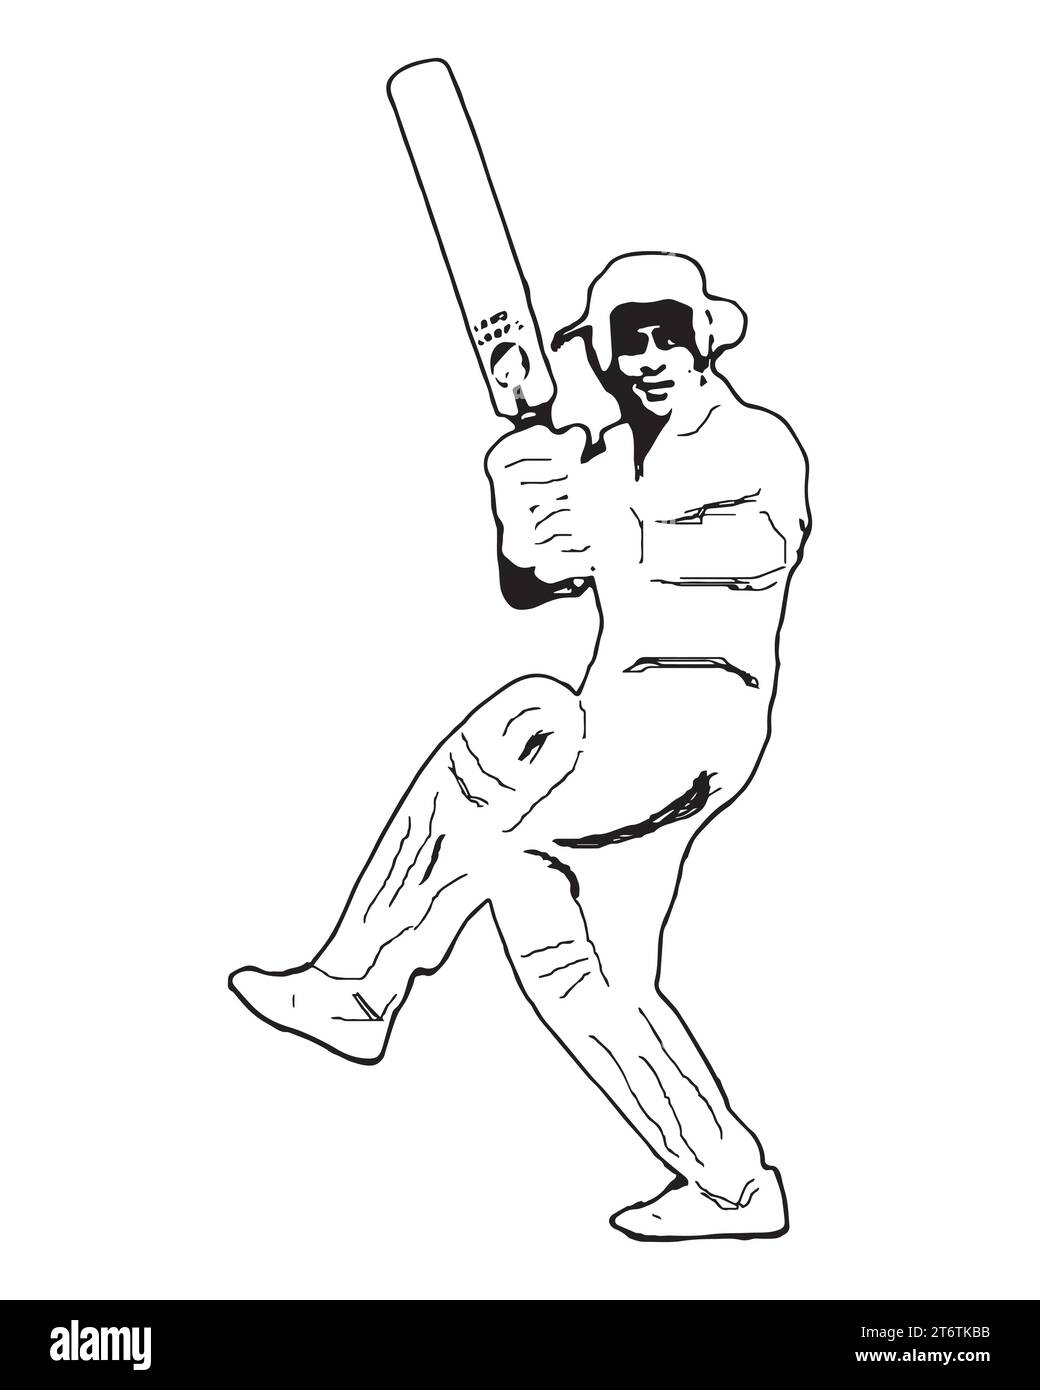 Sunil Gavaskar un joueur de cricket international indien, Illustration vectorielle Abstract modifiable image de fond blanc Illustration de Vecteur